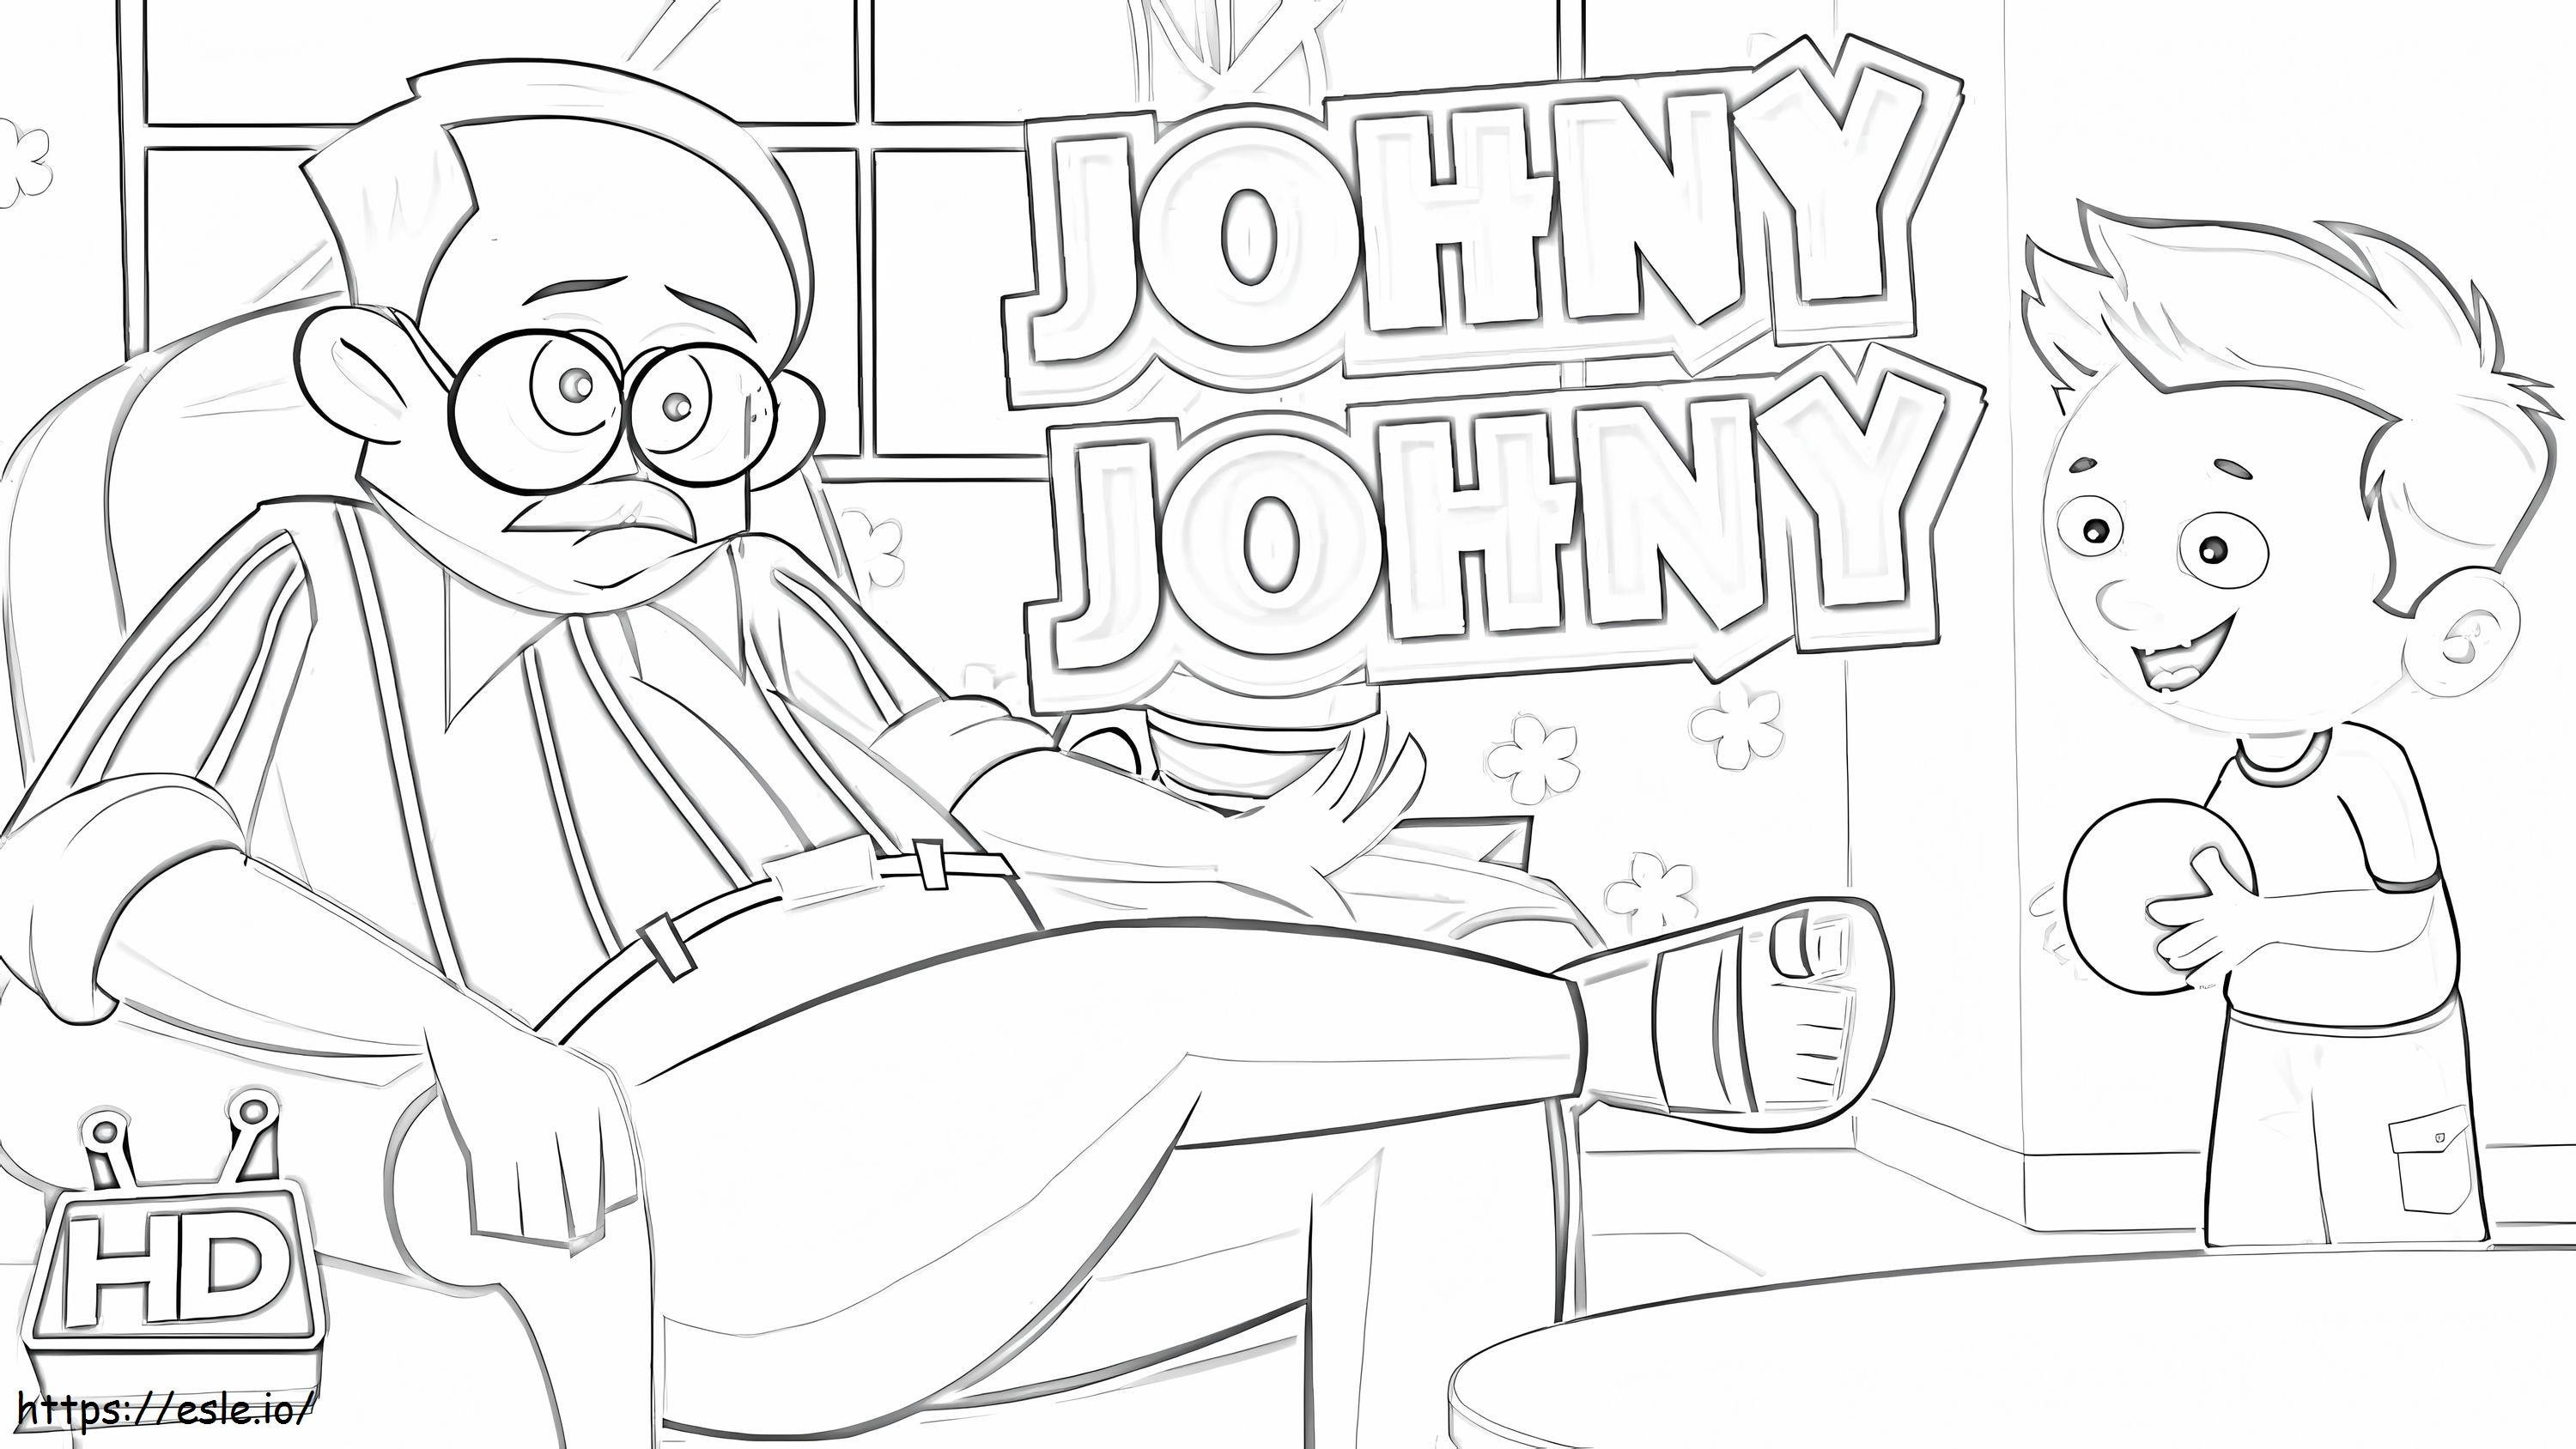 Johny Johny Sim Papai 2 para colorir